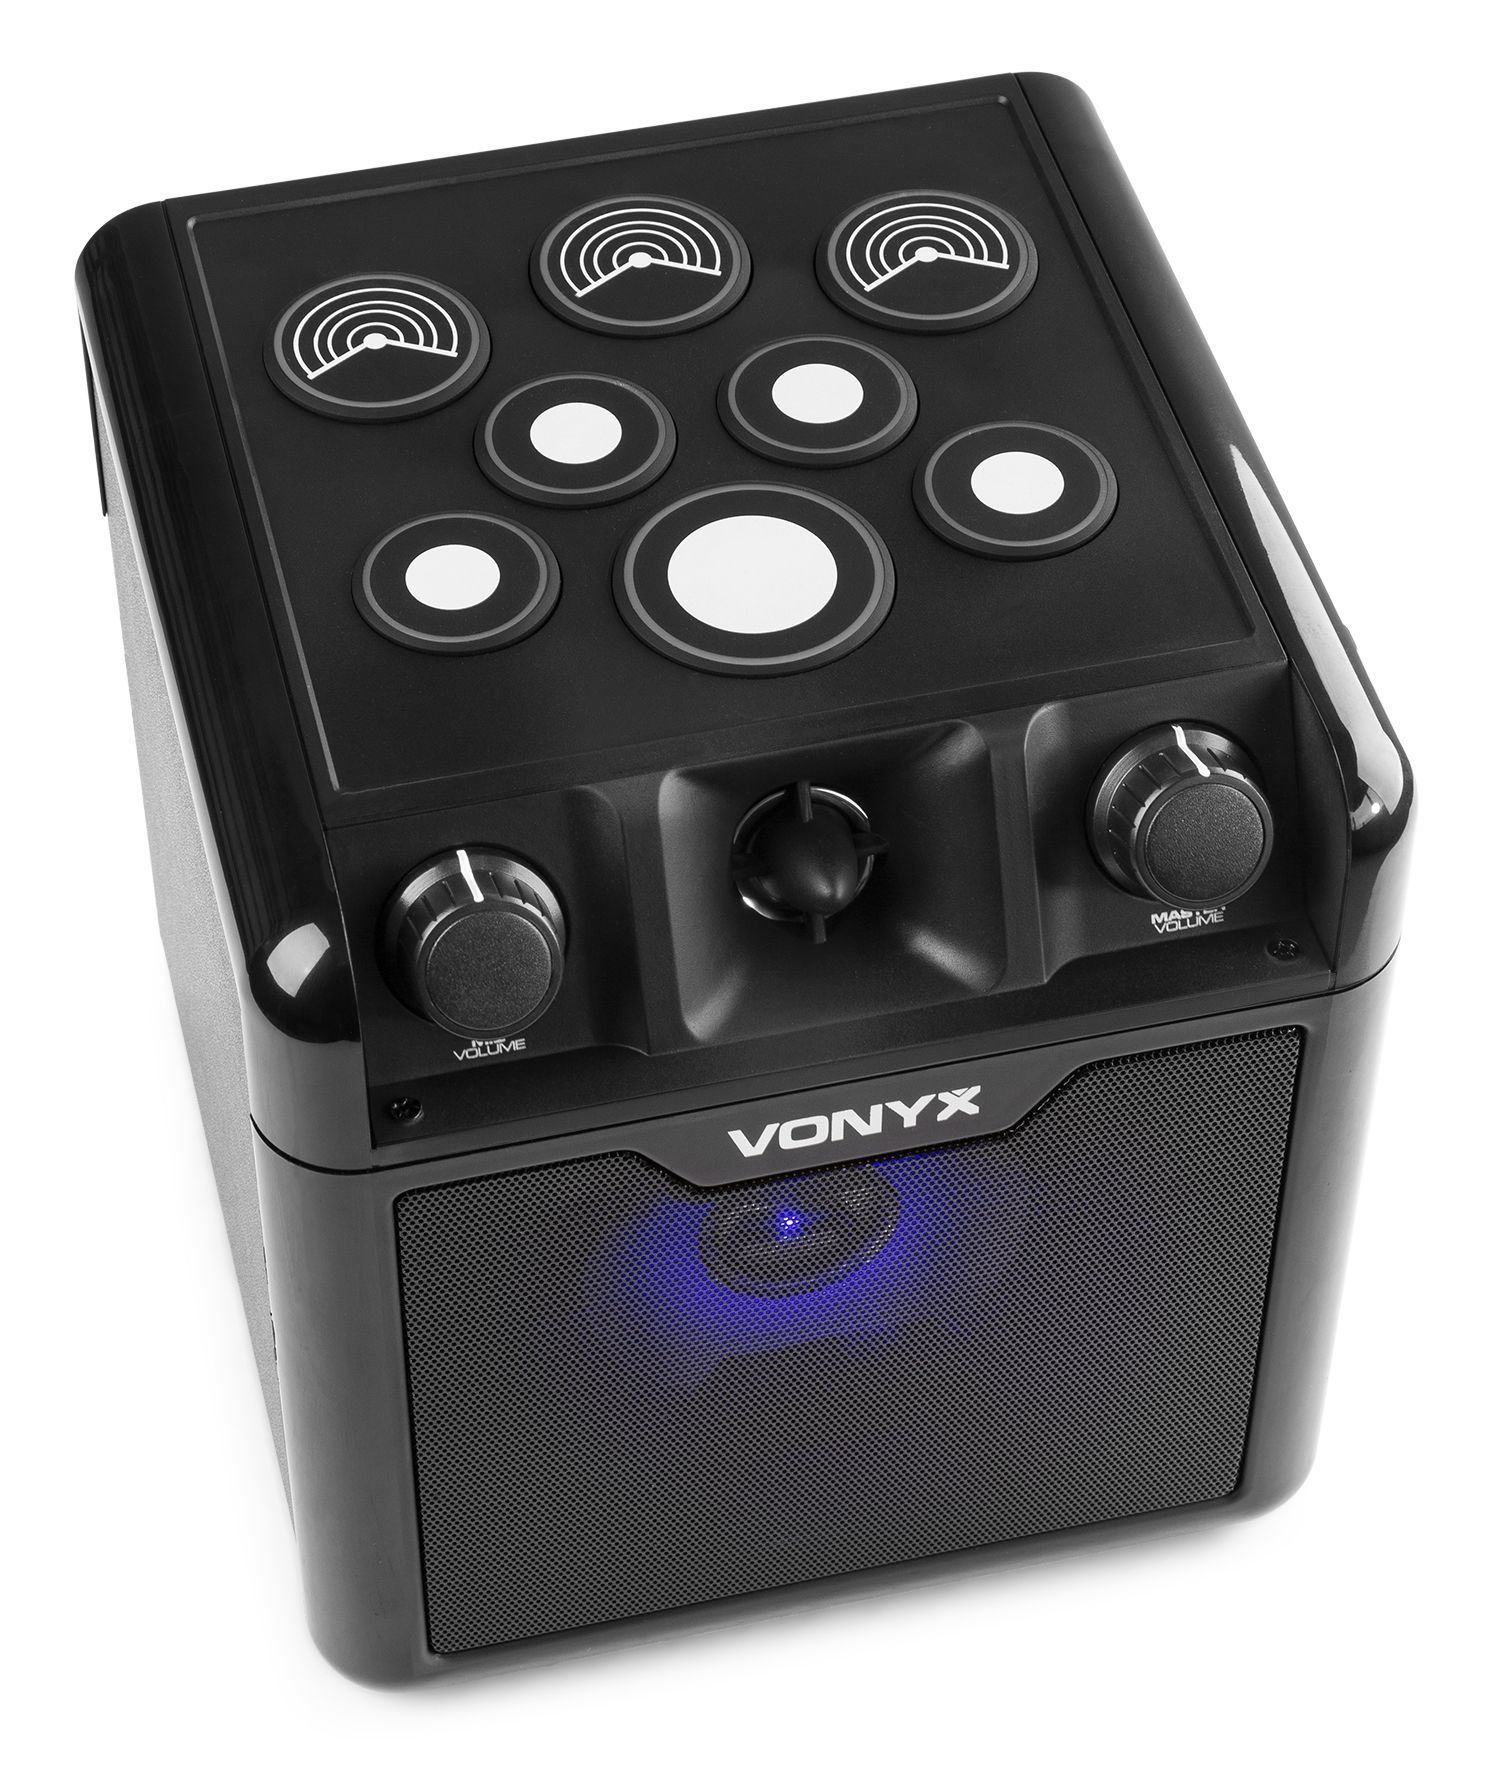 2e keus vonyx sbs50b drum karaoke set met microfoon bluetooth en 7